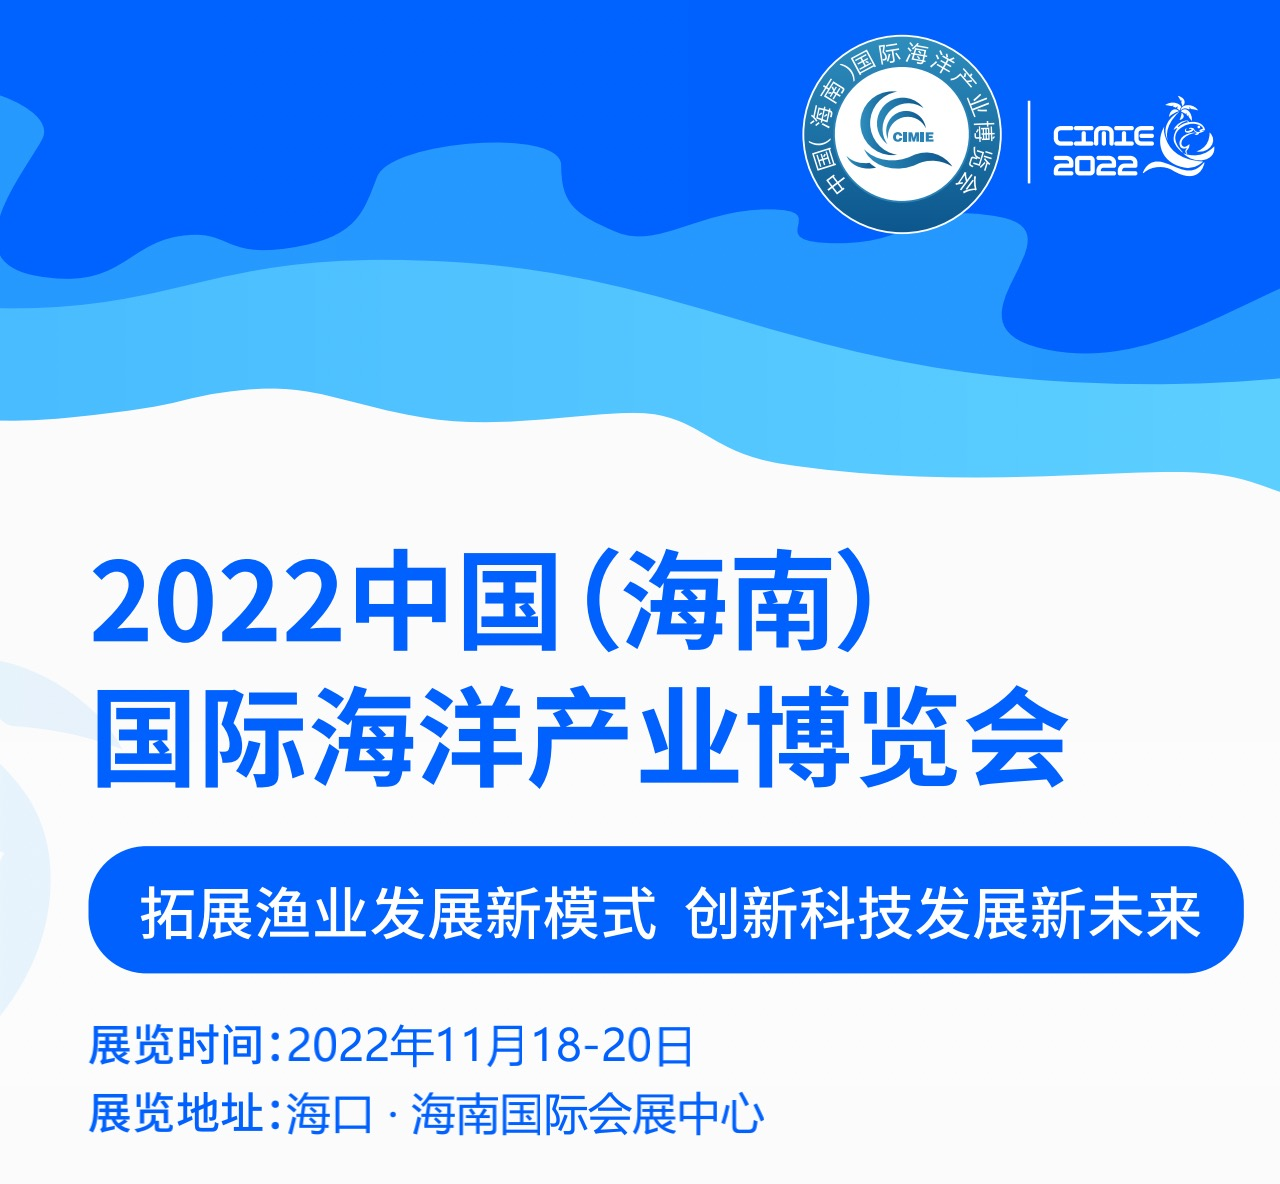 2022 Kina (Hainan) International Marine Industry Expo